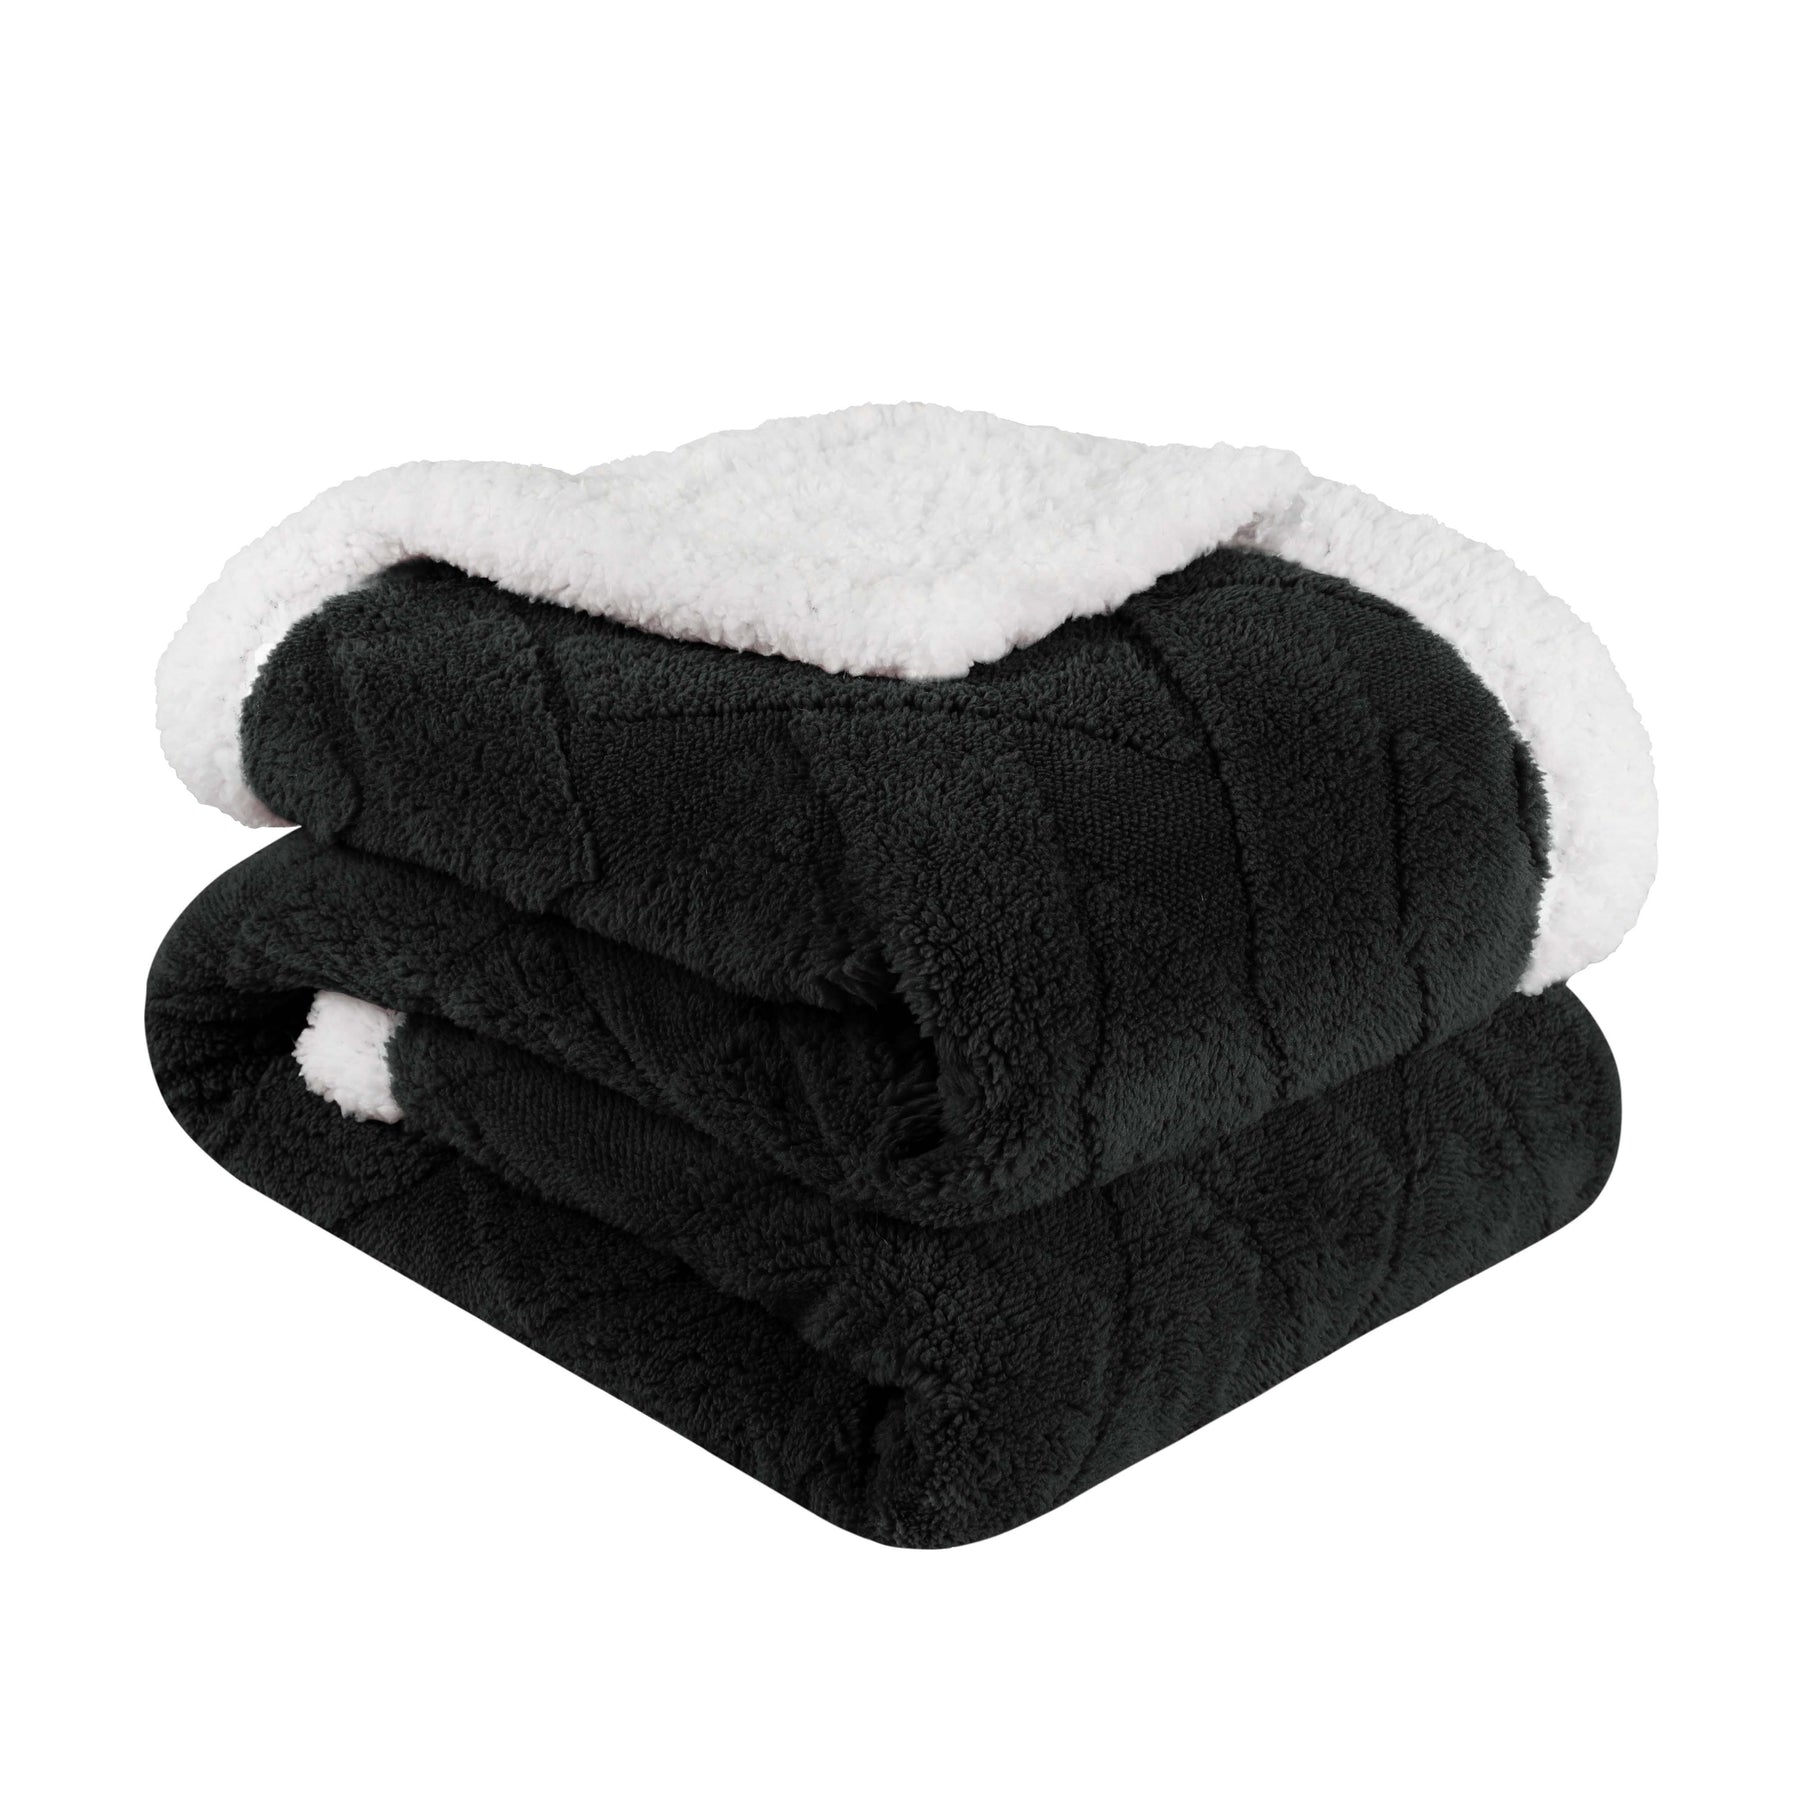 Superior Nuuk Reversible Jacquard Lattice Fleece Plush Sherpa Blanket - Black